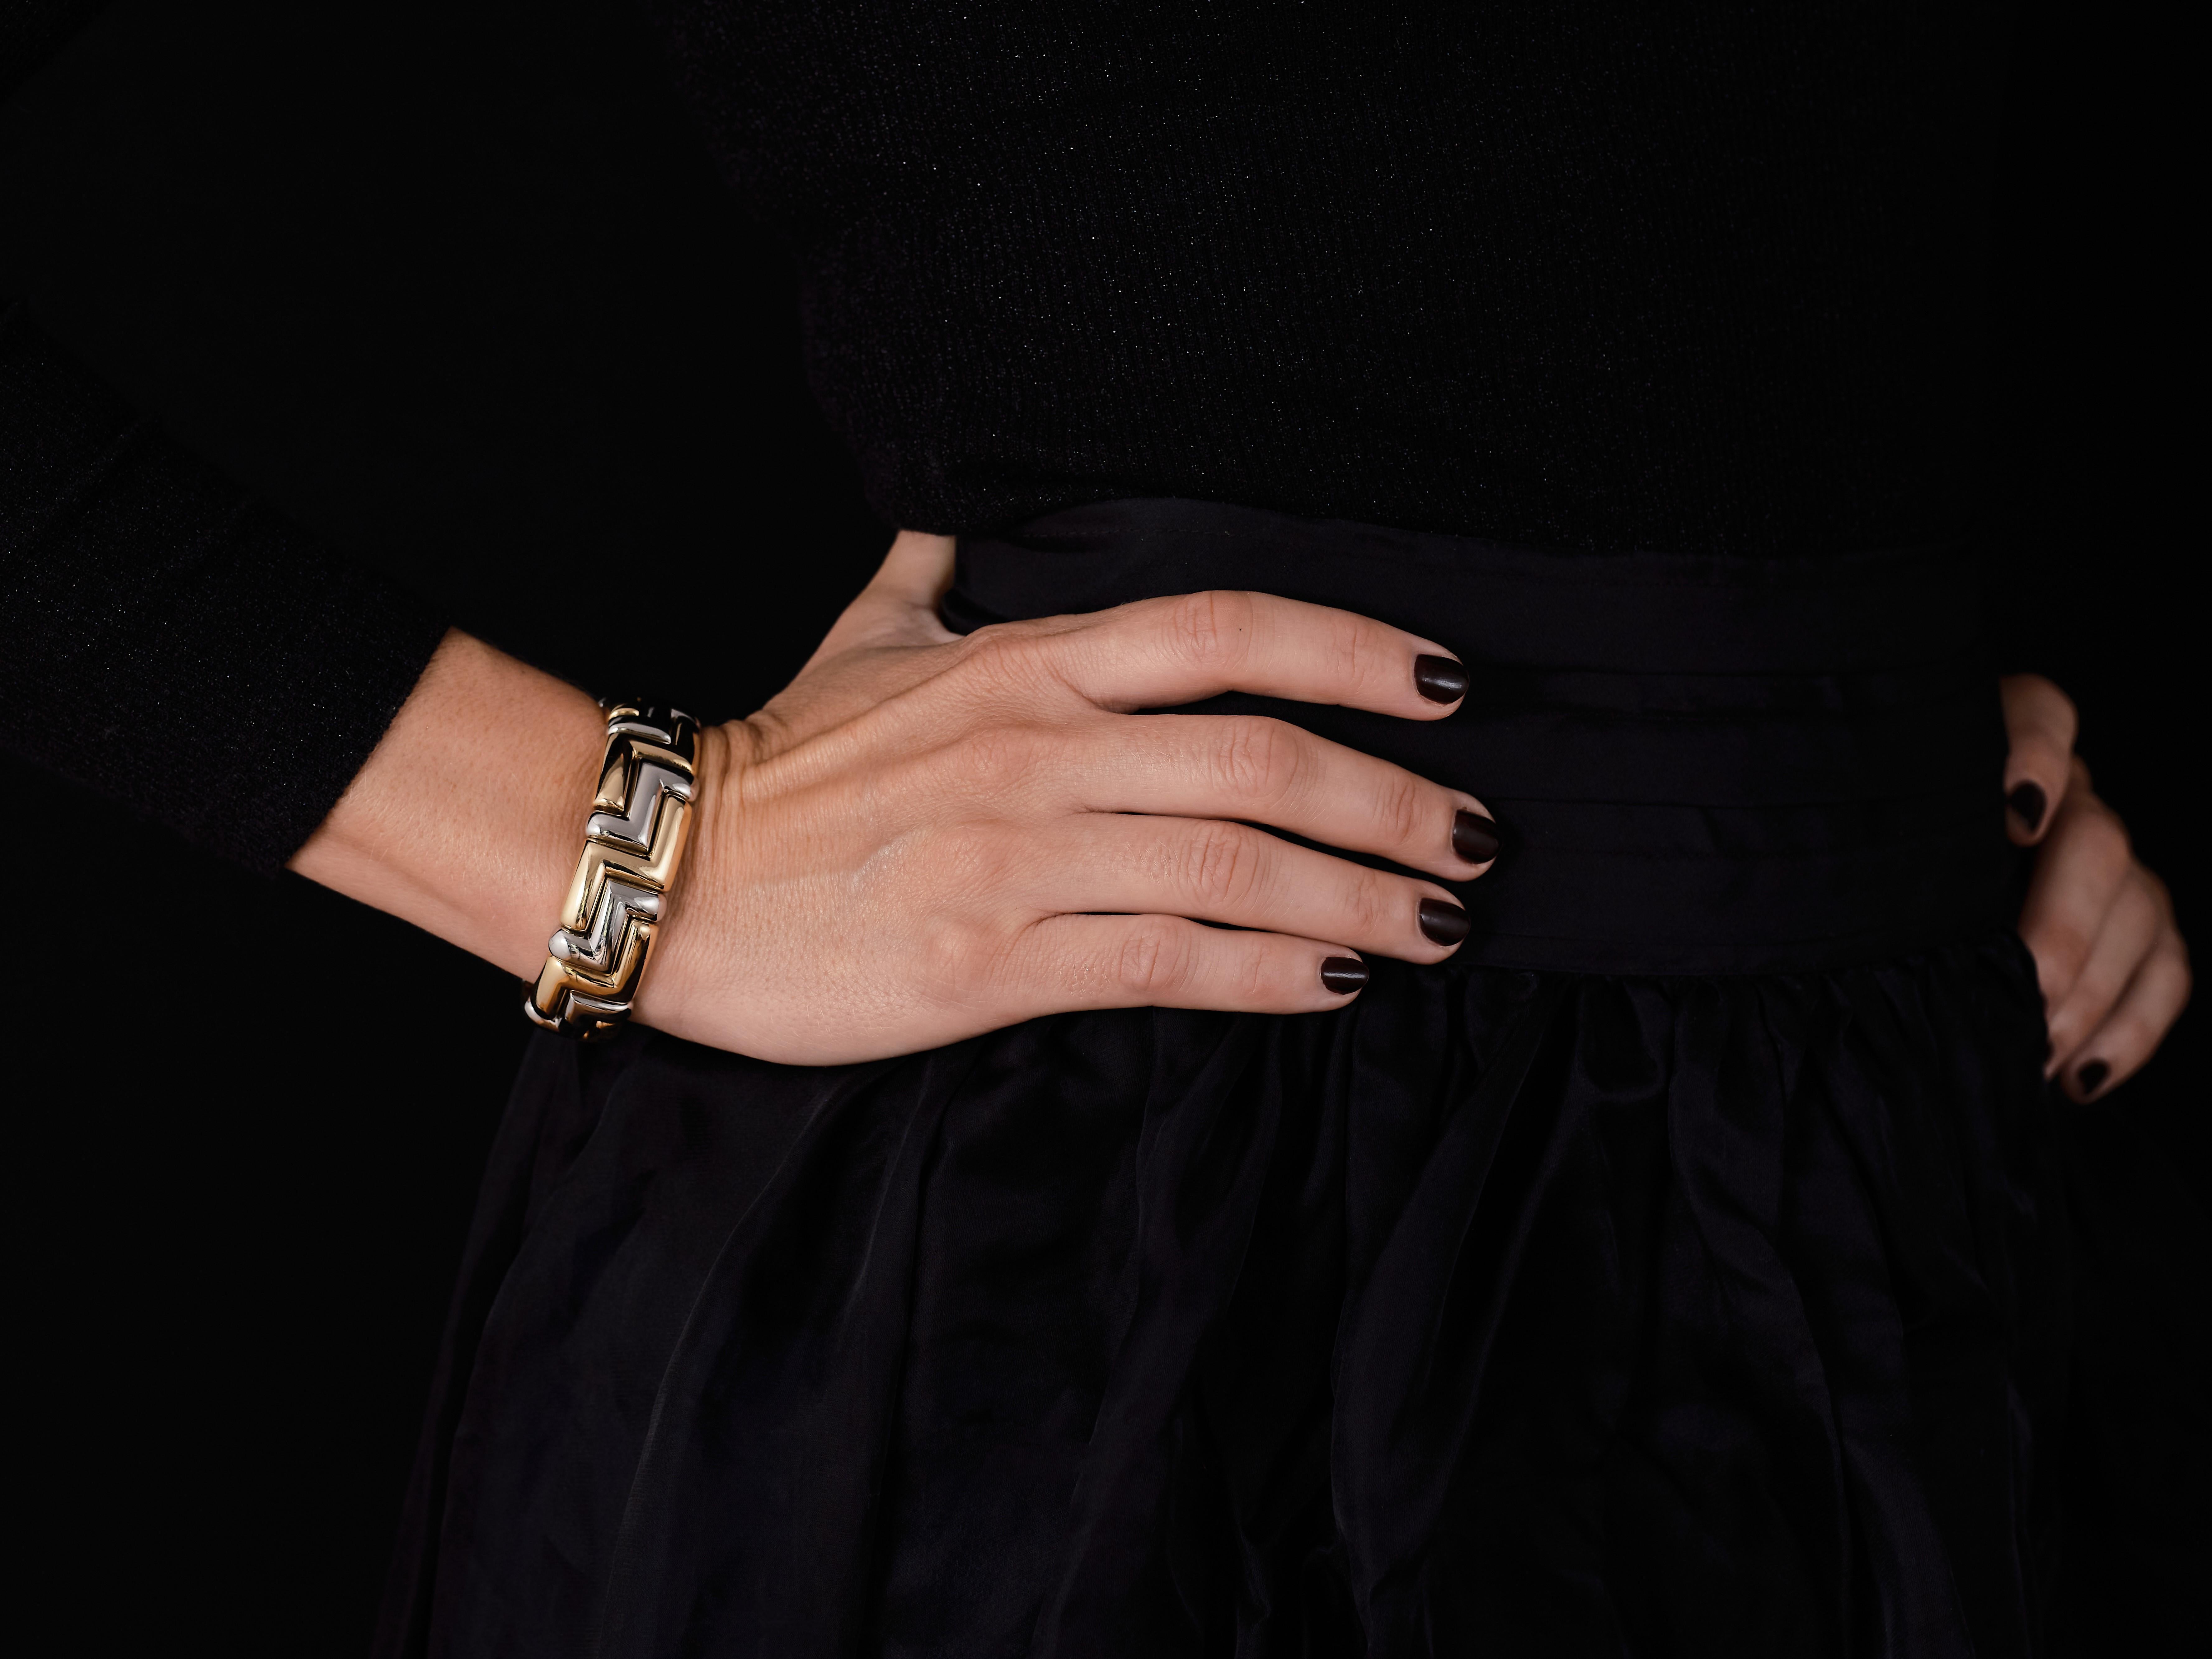 Superbe bracelet Bvlgari en or jaune 18 carats et acier gris, composé de maillons géométriques s'emboîtant les uns dans les autres pour créer un zigzag audacieux et séduisant. 

Ce magnifique bracelet mesure 0,72 / 18,2 cm de large et a une